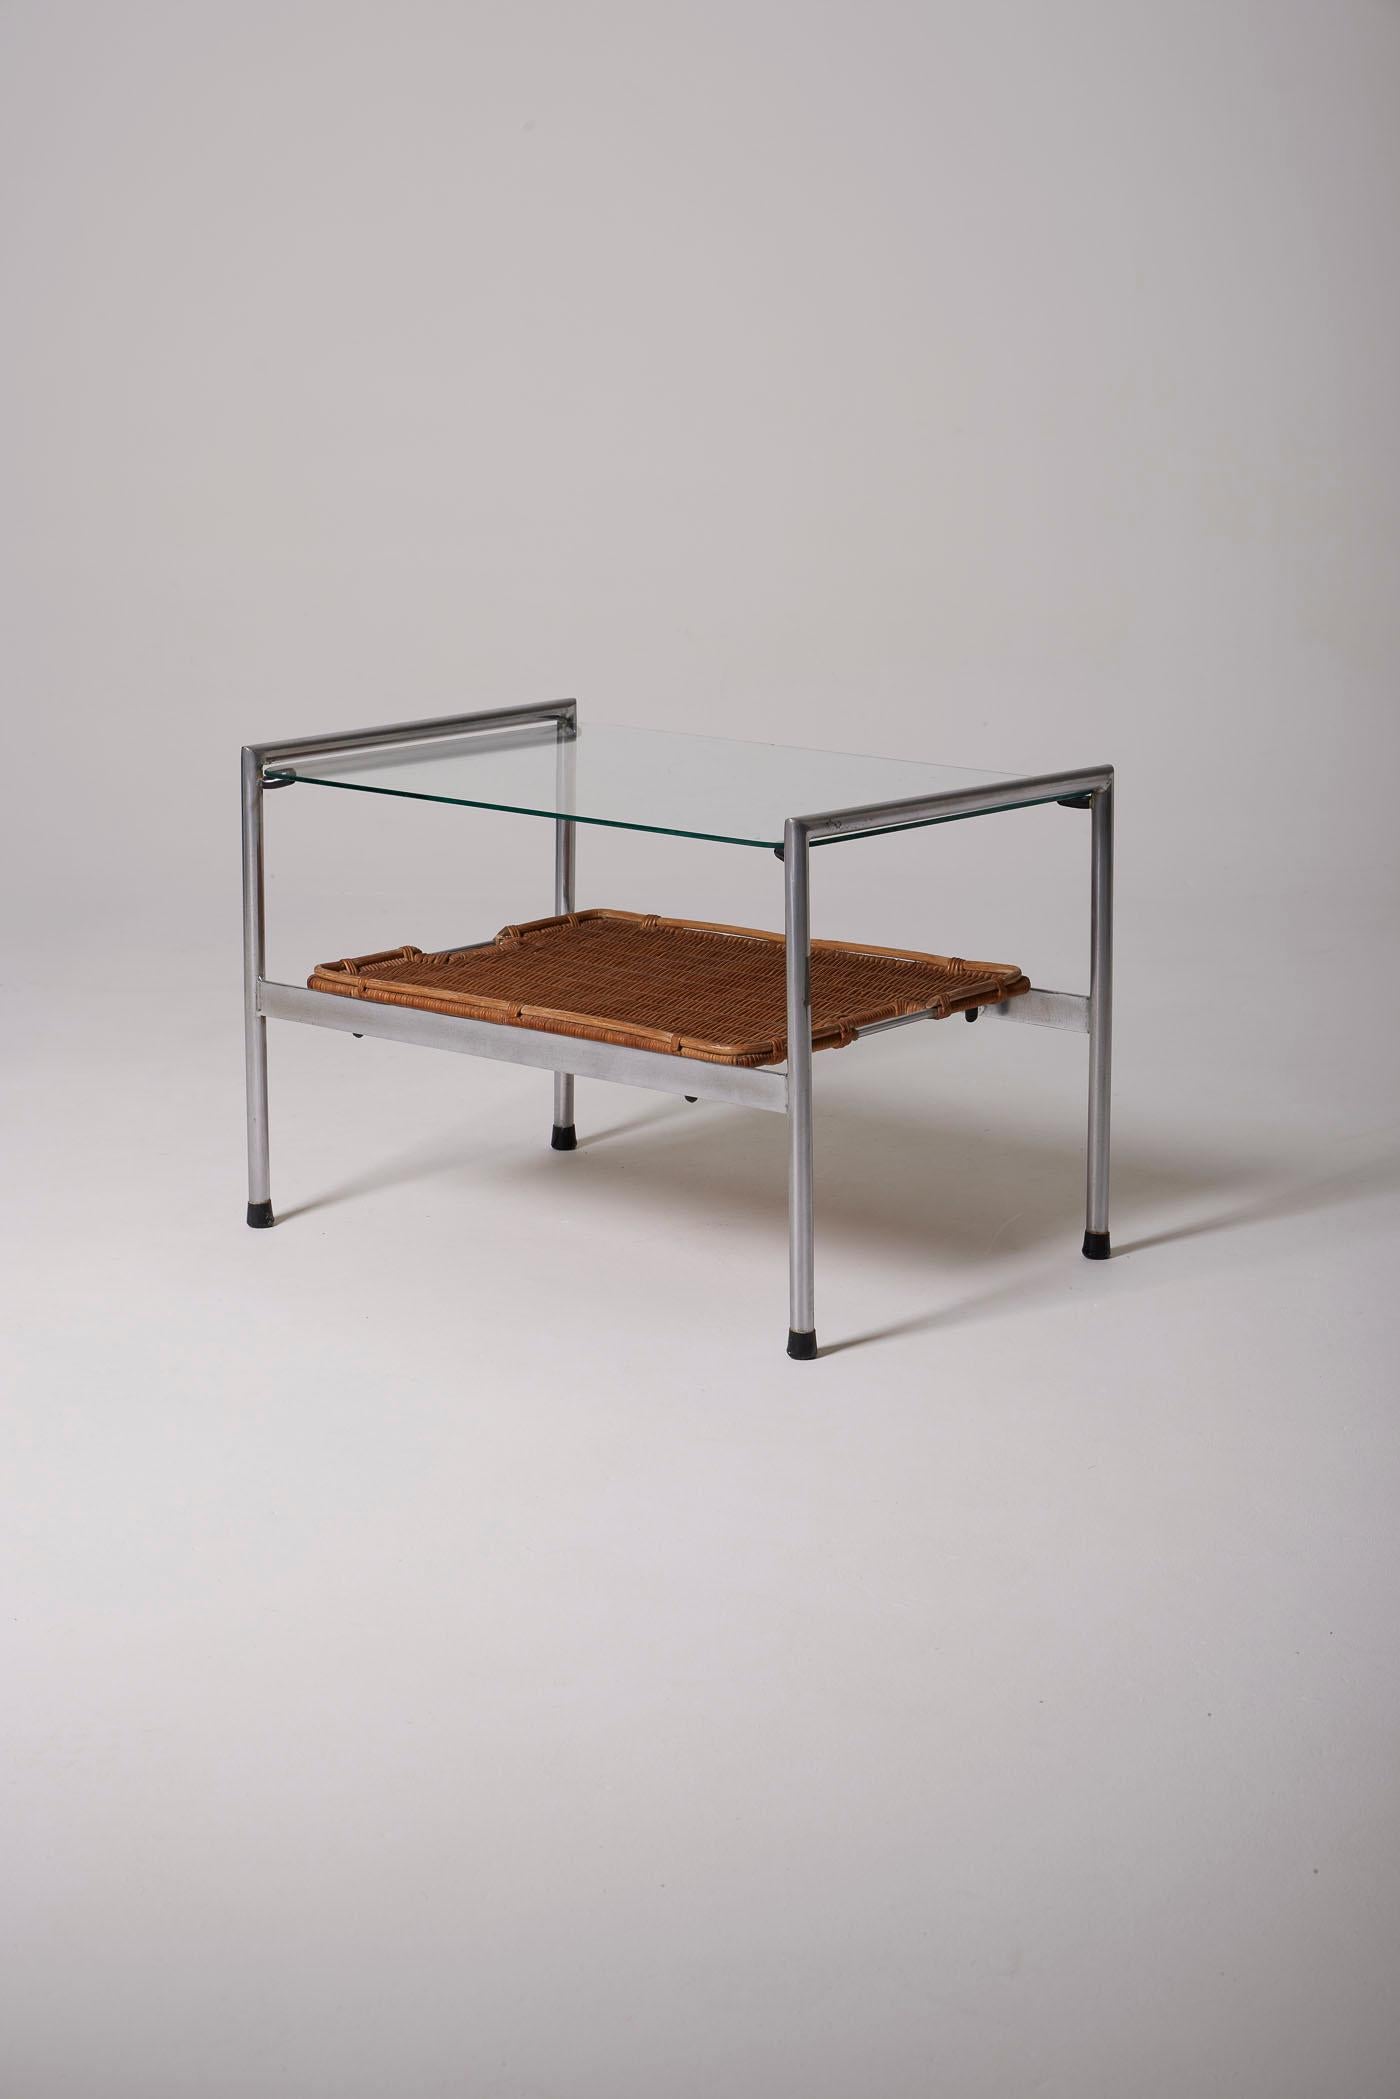 Couchtisch oder Beistelltisch des niederländischen Designers Dirk Van Sliedregt, aus den 1950er Jahren. Er besteht aus einer Tischplatte aus Glas, einem abnehmbaren Tablett aus geflochtenem Rattan und einem Untergestell aus gebürstetem Stahl. In